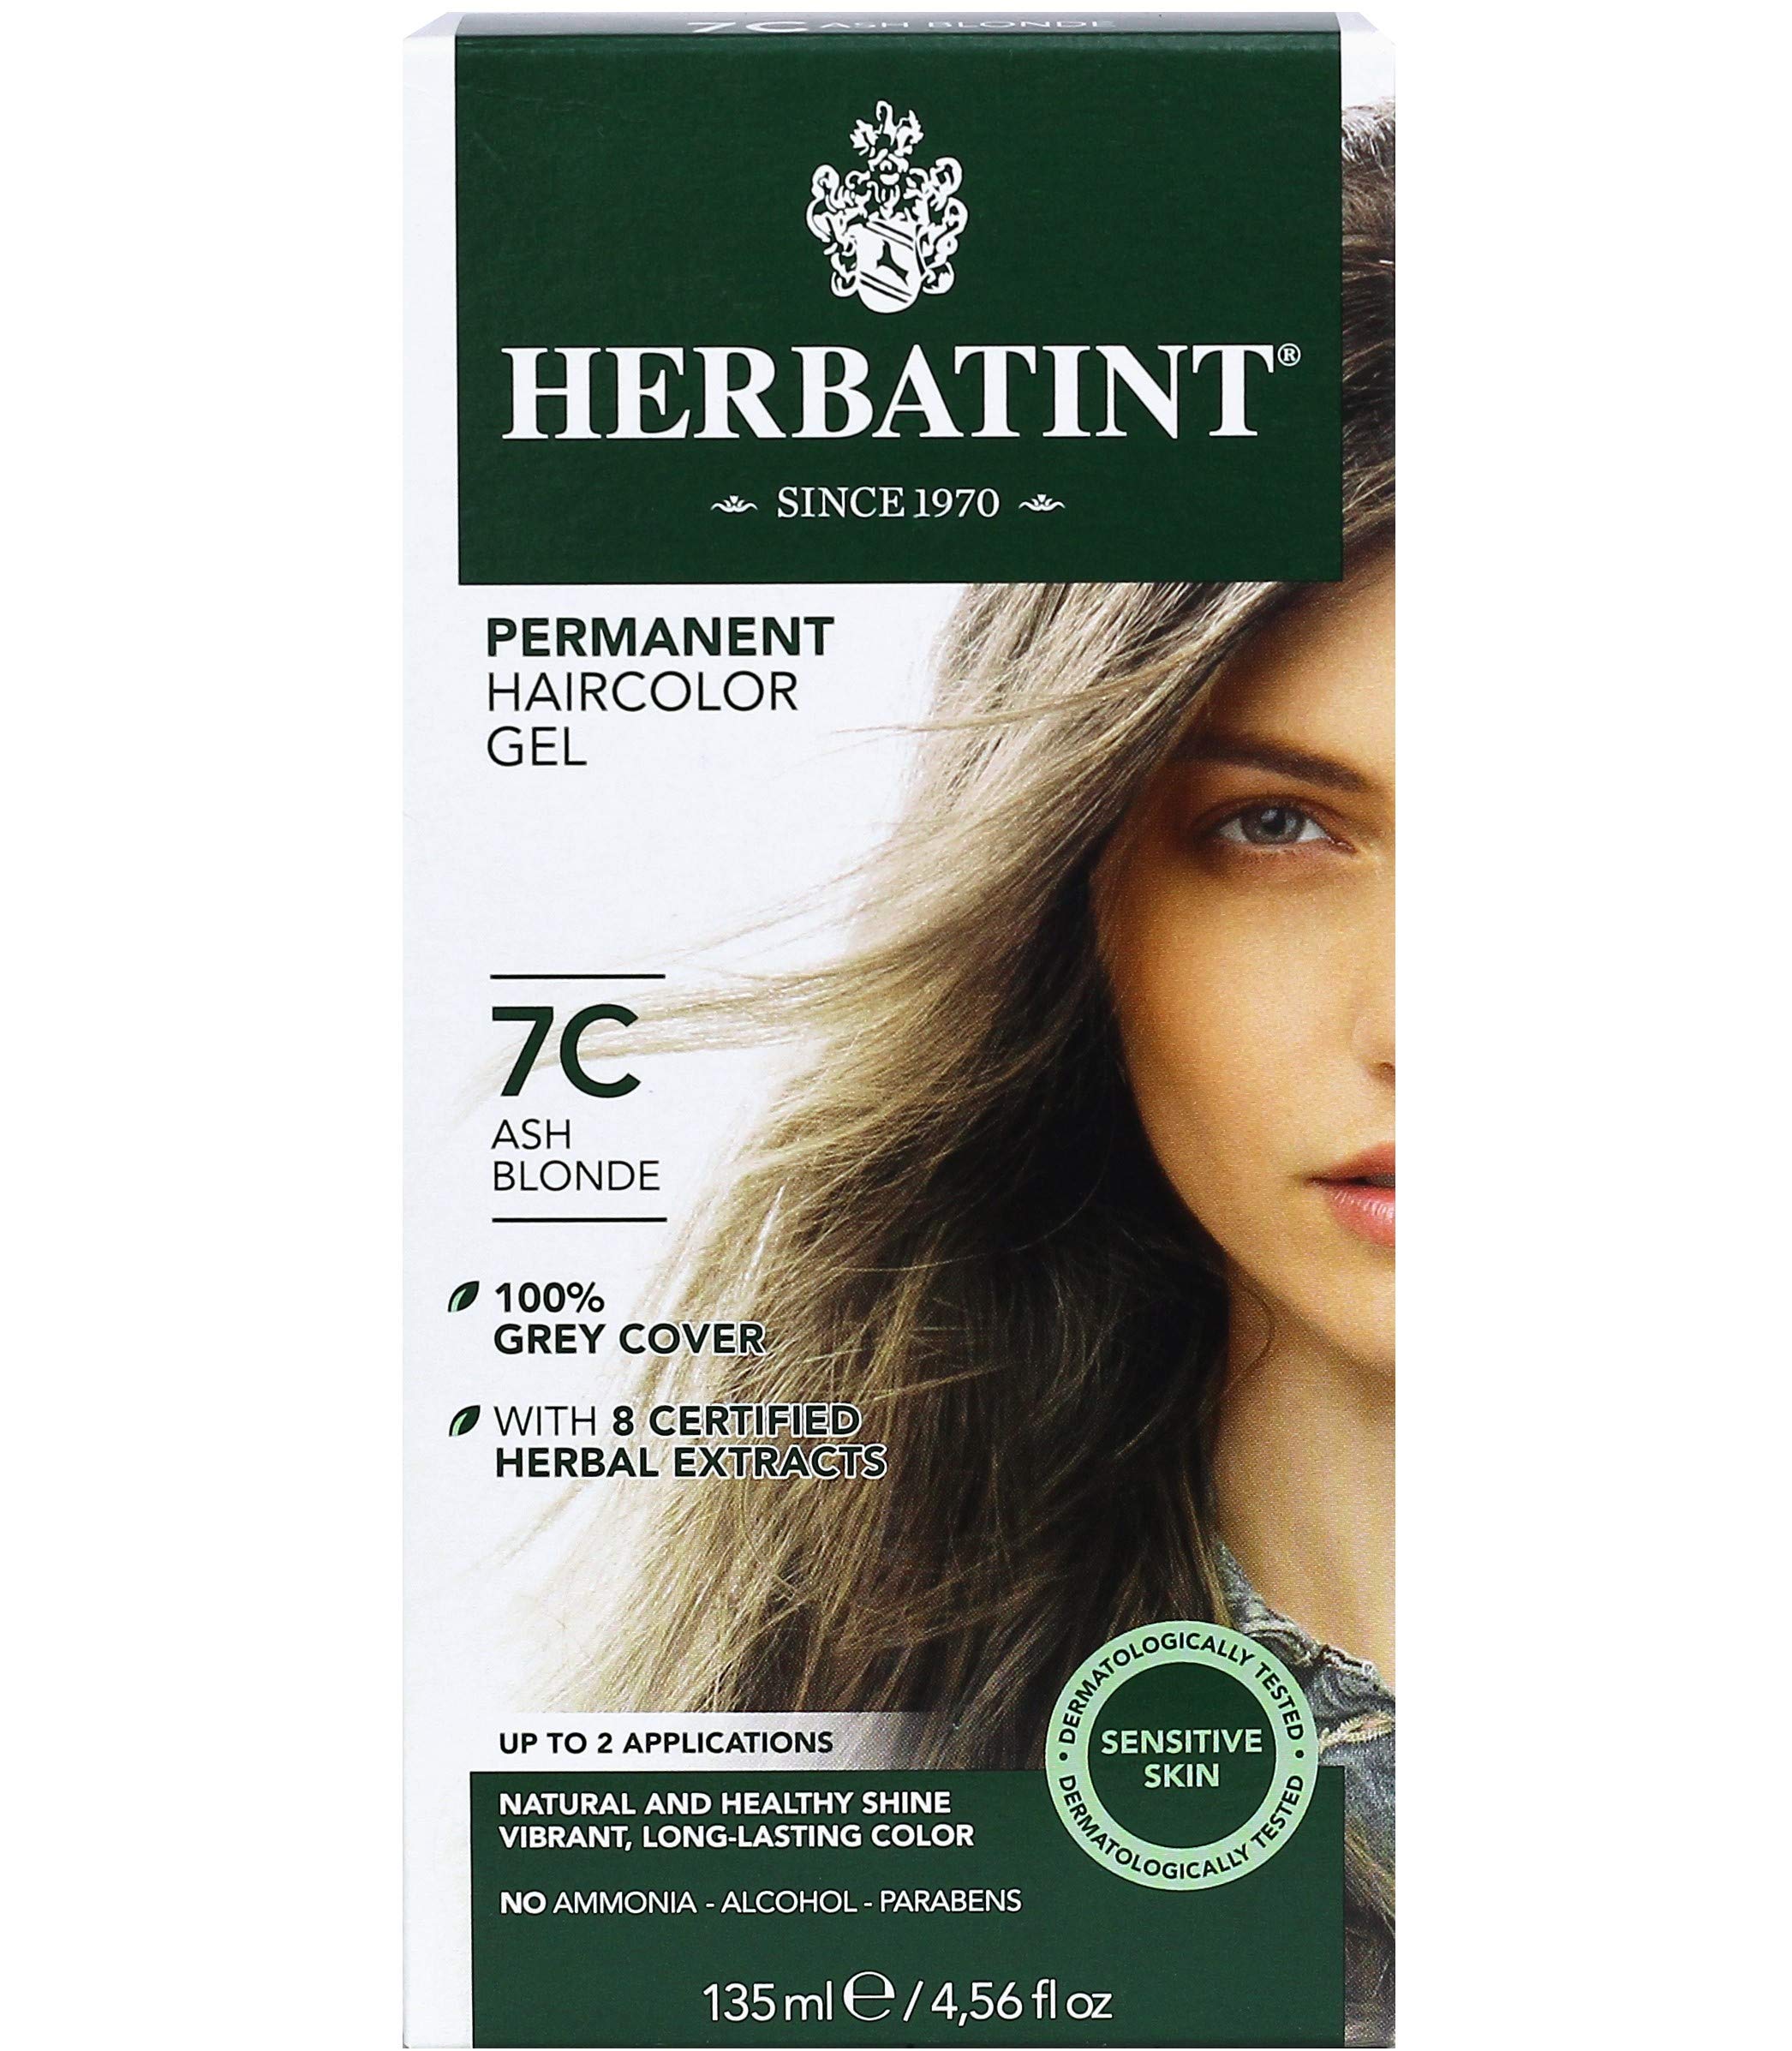 Herbatint Permanent Haircolor Gel, 7C Ash Blonde, Alcohol Free, Vegan, 100% Grey Coverage - 4.56 oz